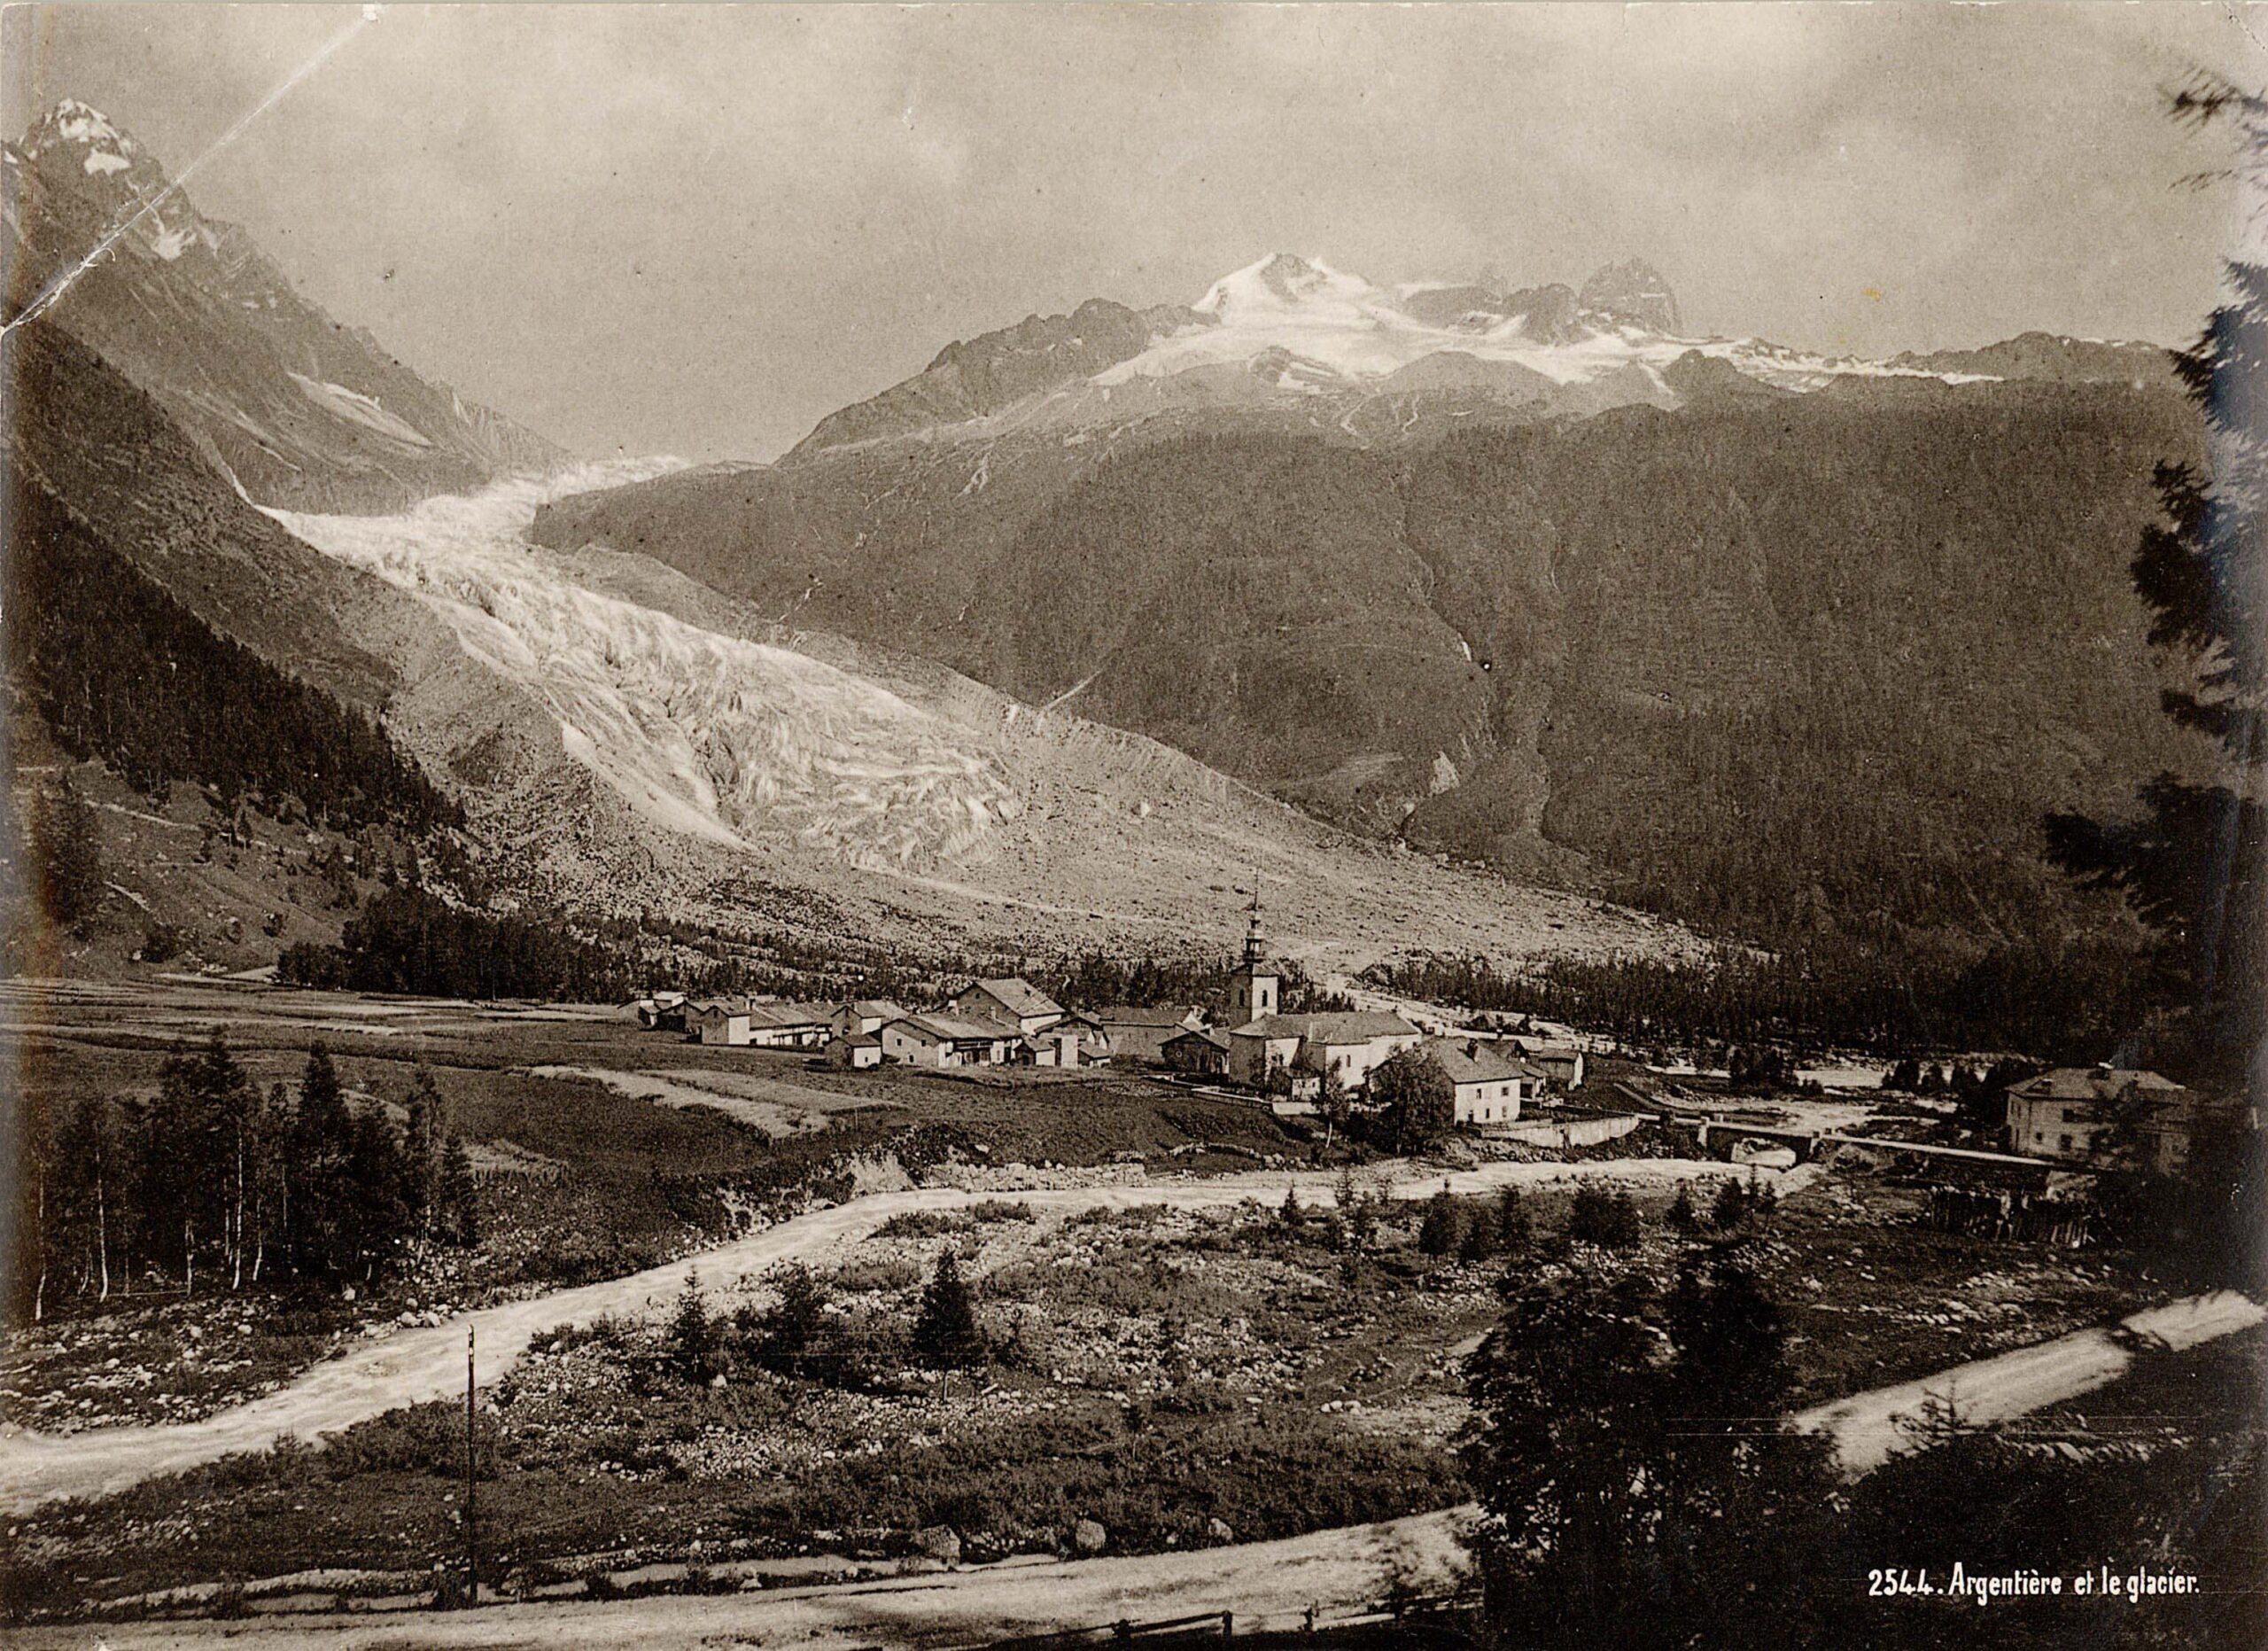 Het dorp Argentière met de gletsjer op de achtergrond, circa 1898. De gletsjer is al korter geworden. Bron: beeldbank ETH Zürich, foto Hs_1458-GK-BF01-1898.